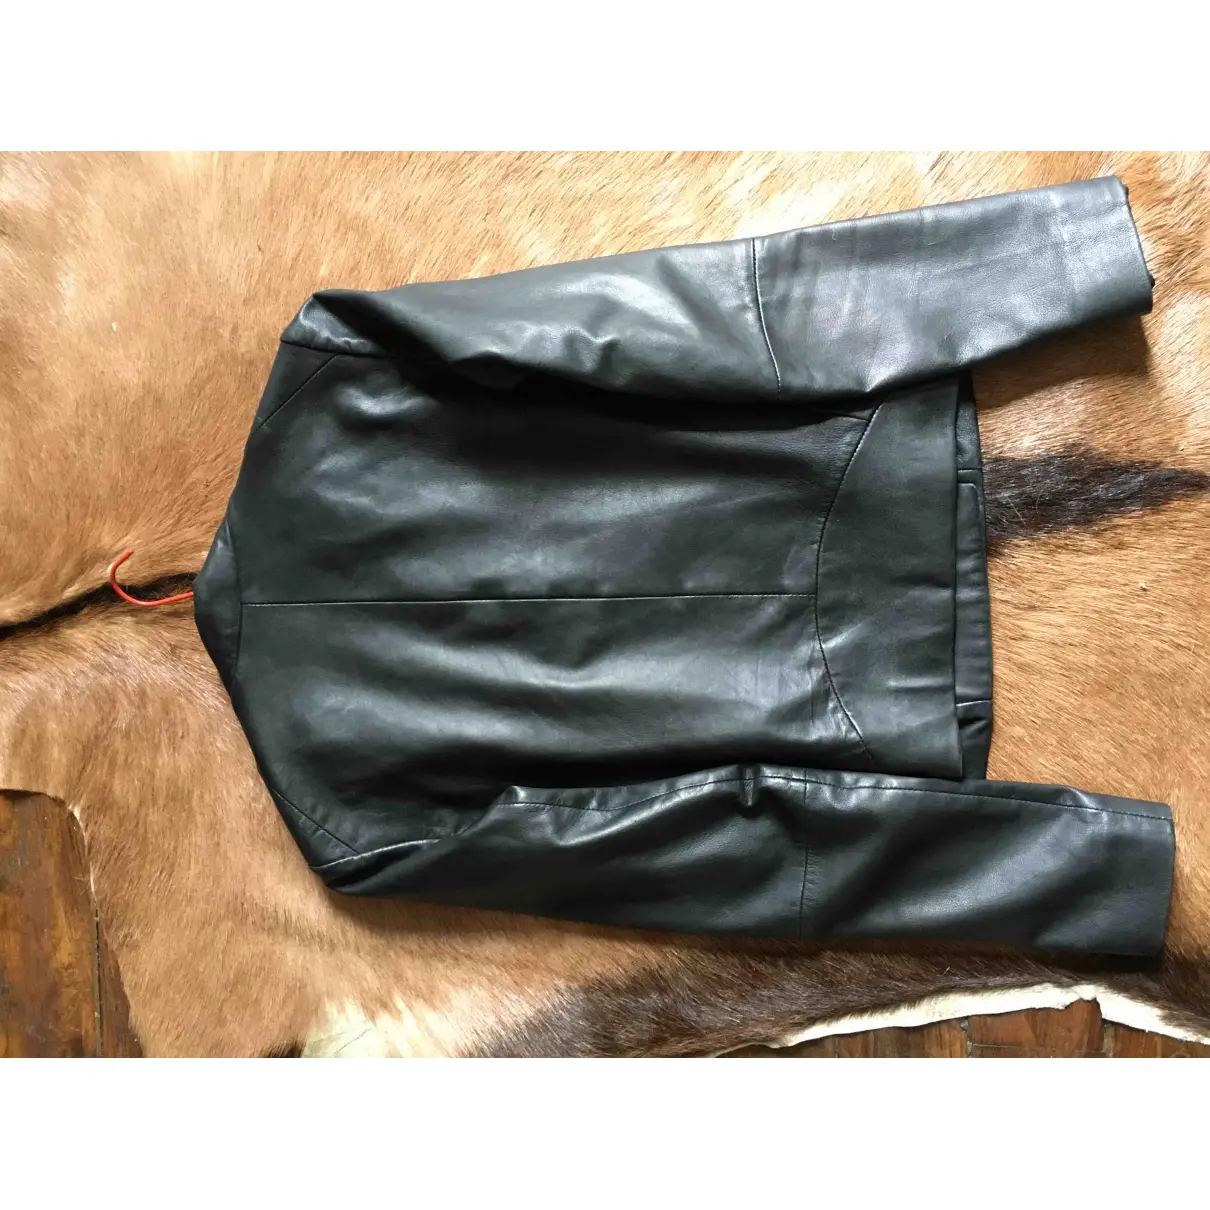 Leather jacket Maje